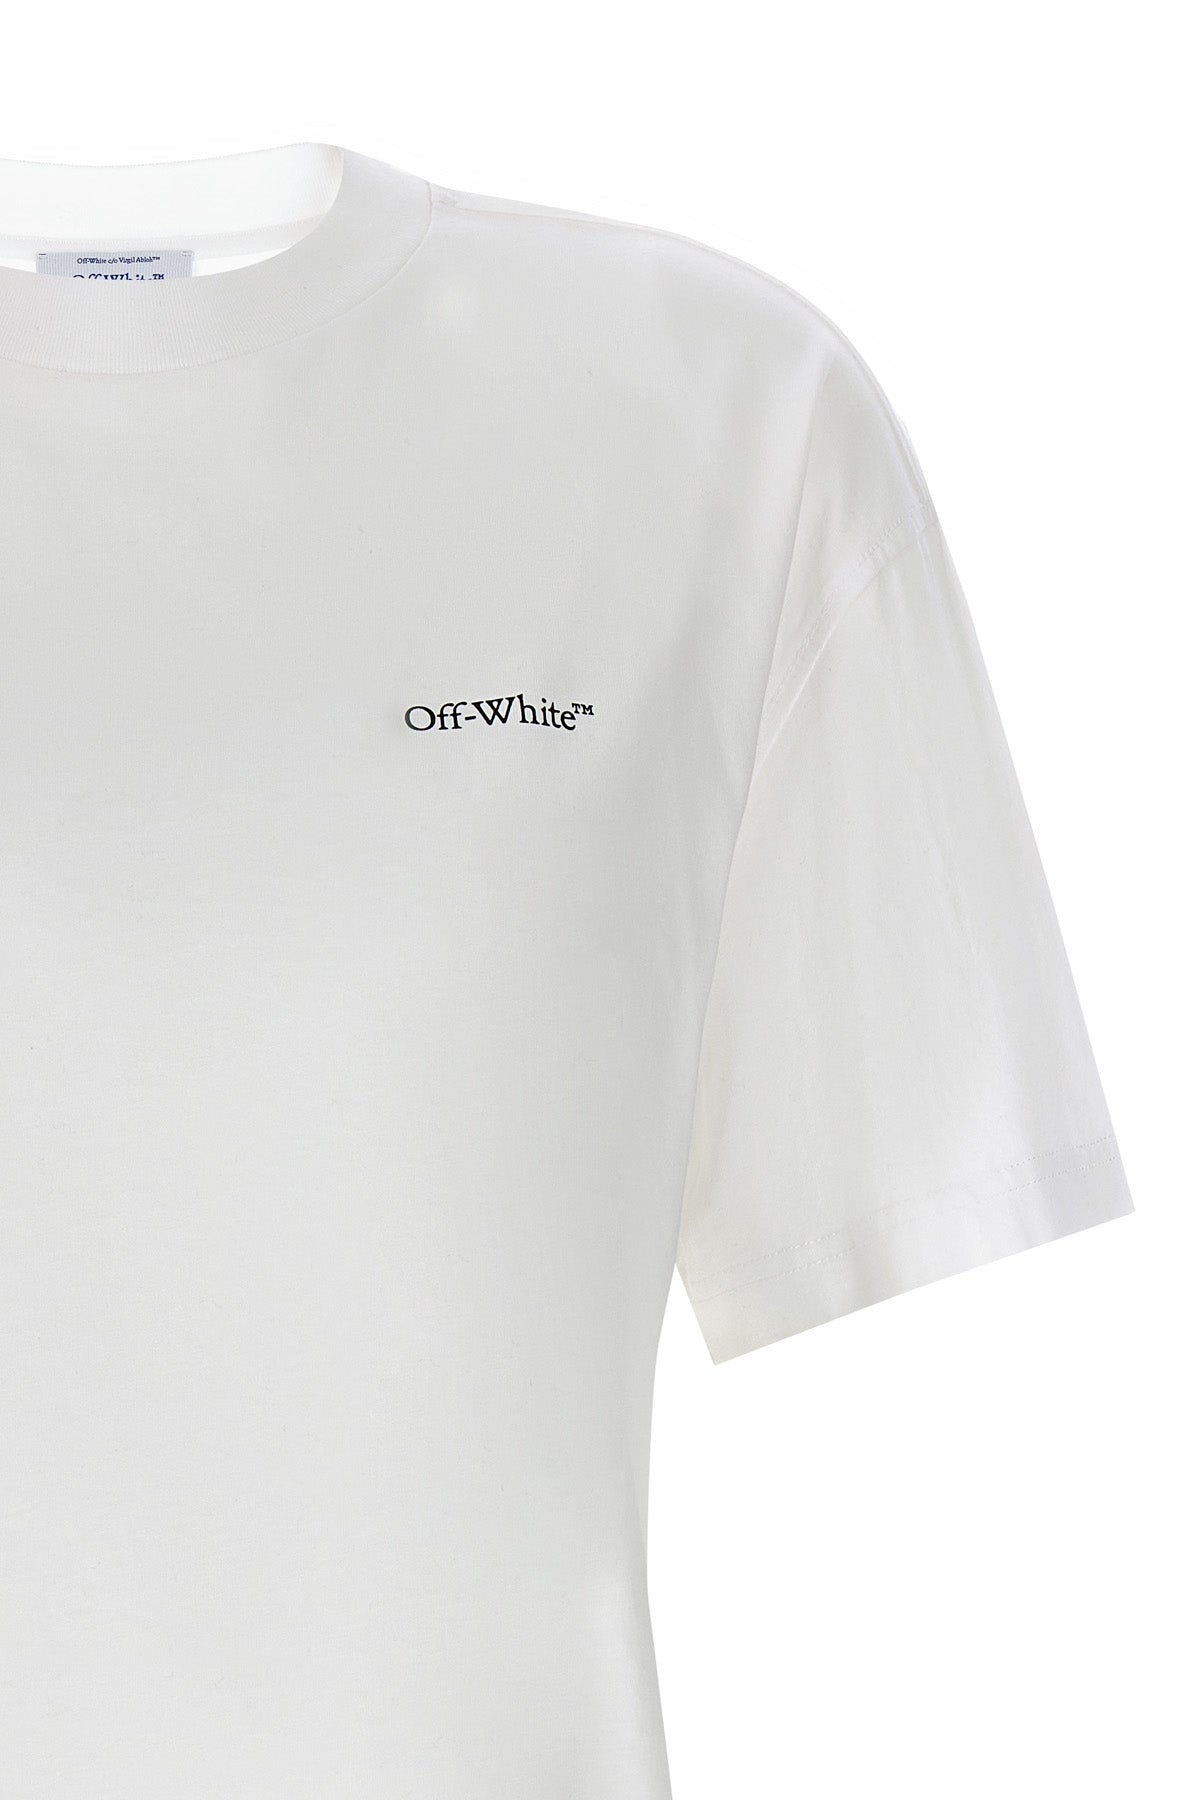 Off-White 'XRAY ARROW' T-SHIRT OWAA089S24JER00101840184